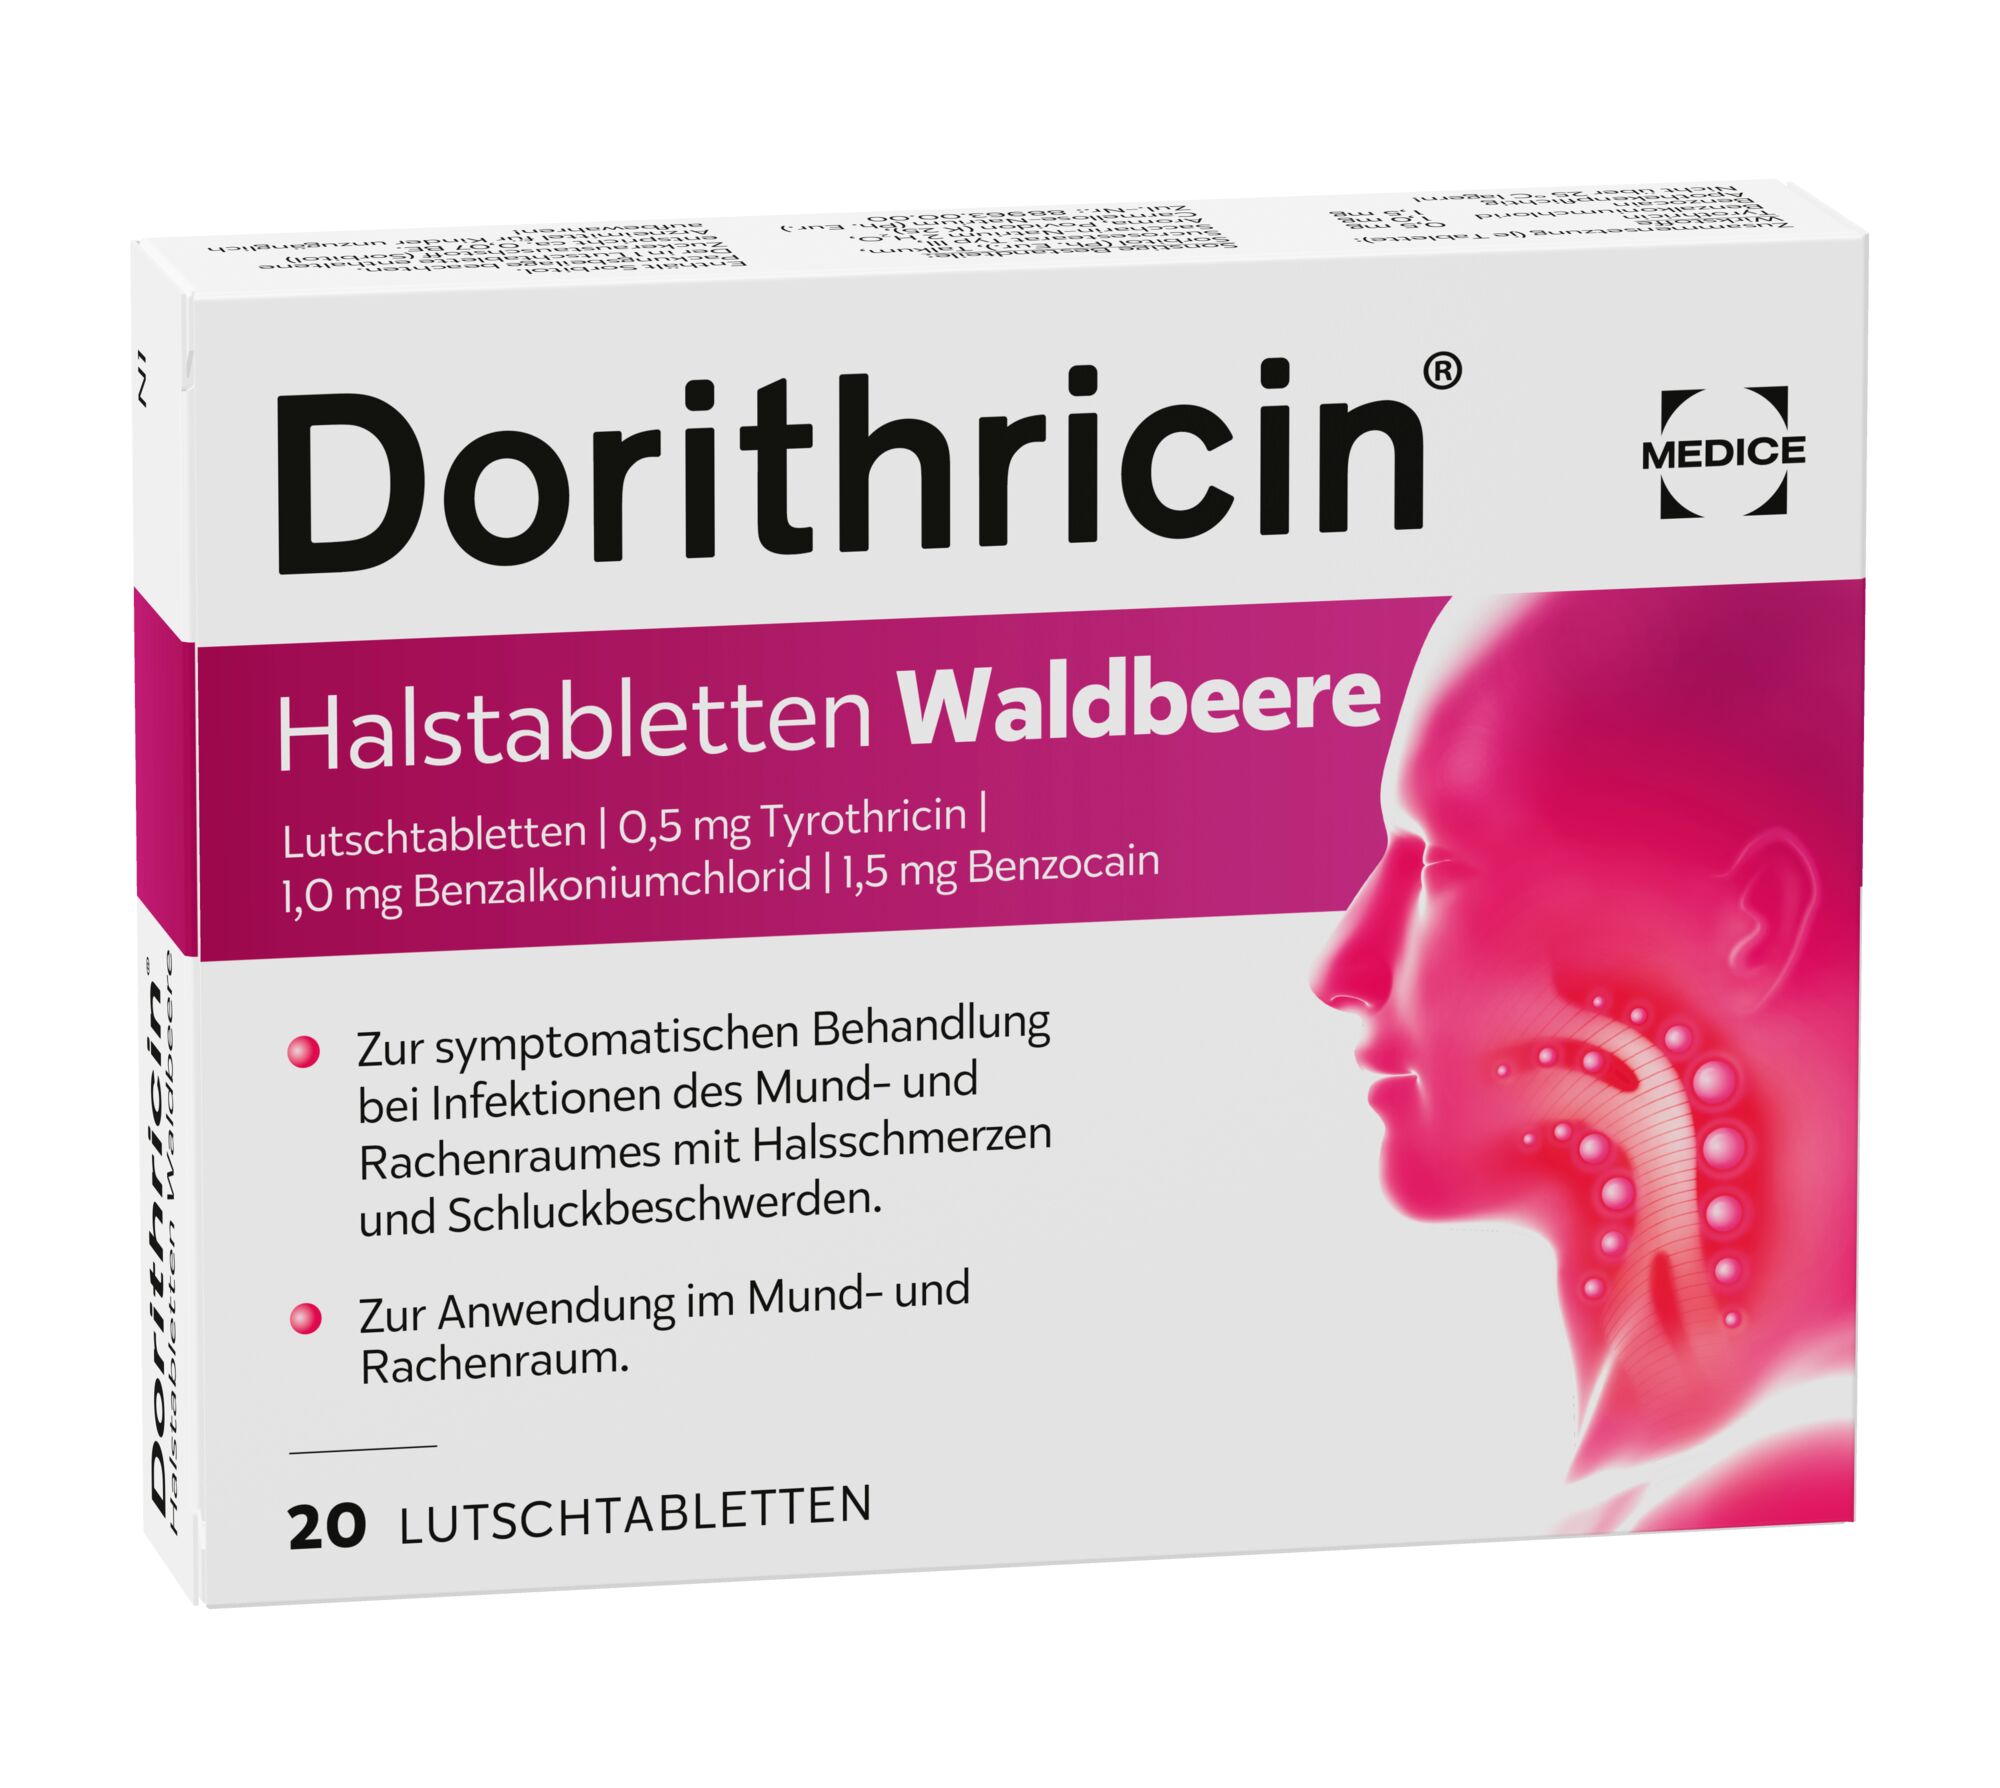 Dorithricin Halstabletten Waldbeere (20 Stk)